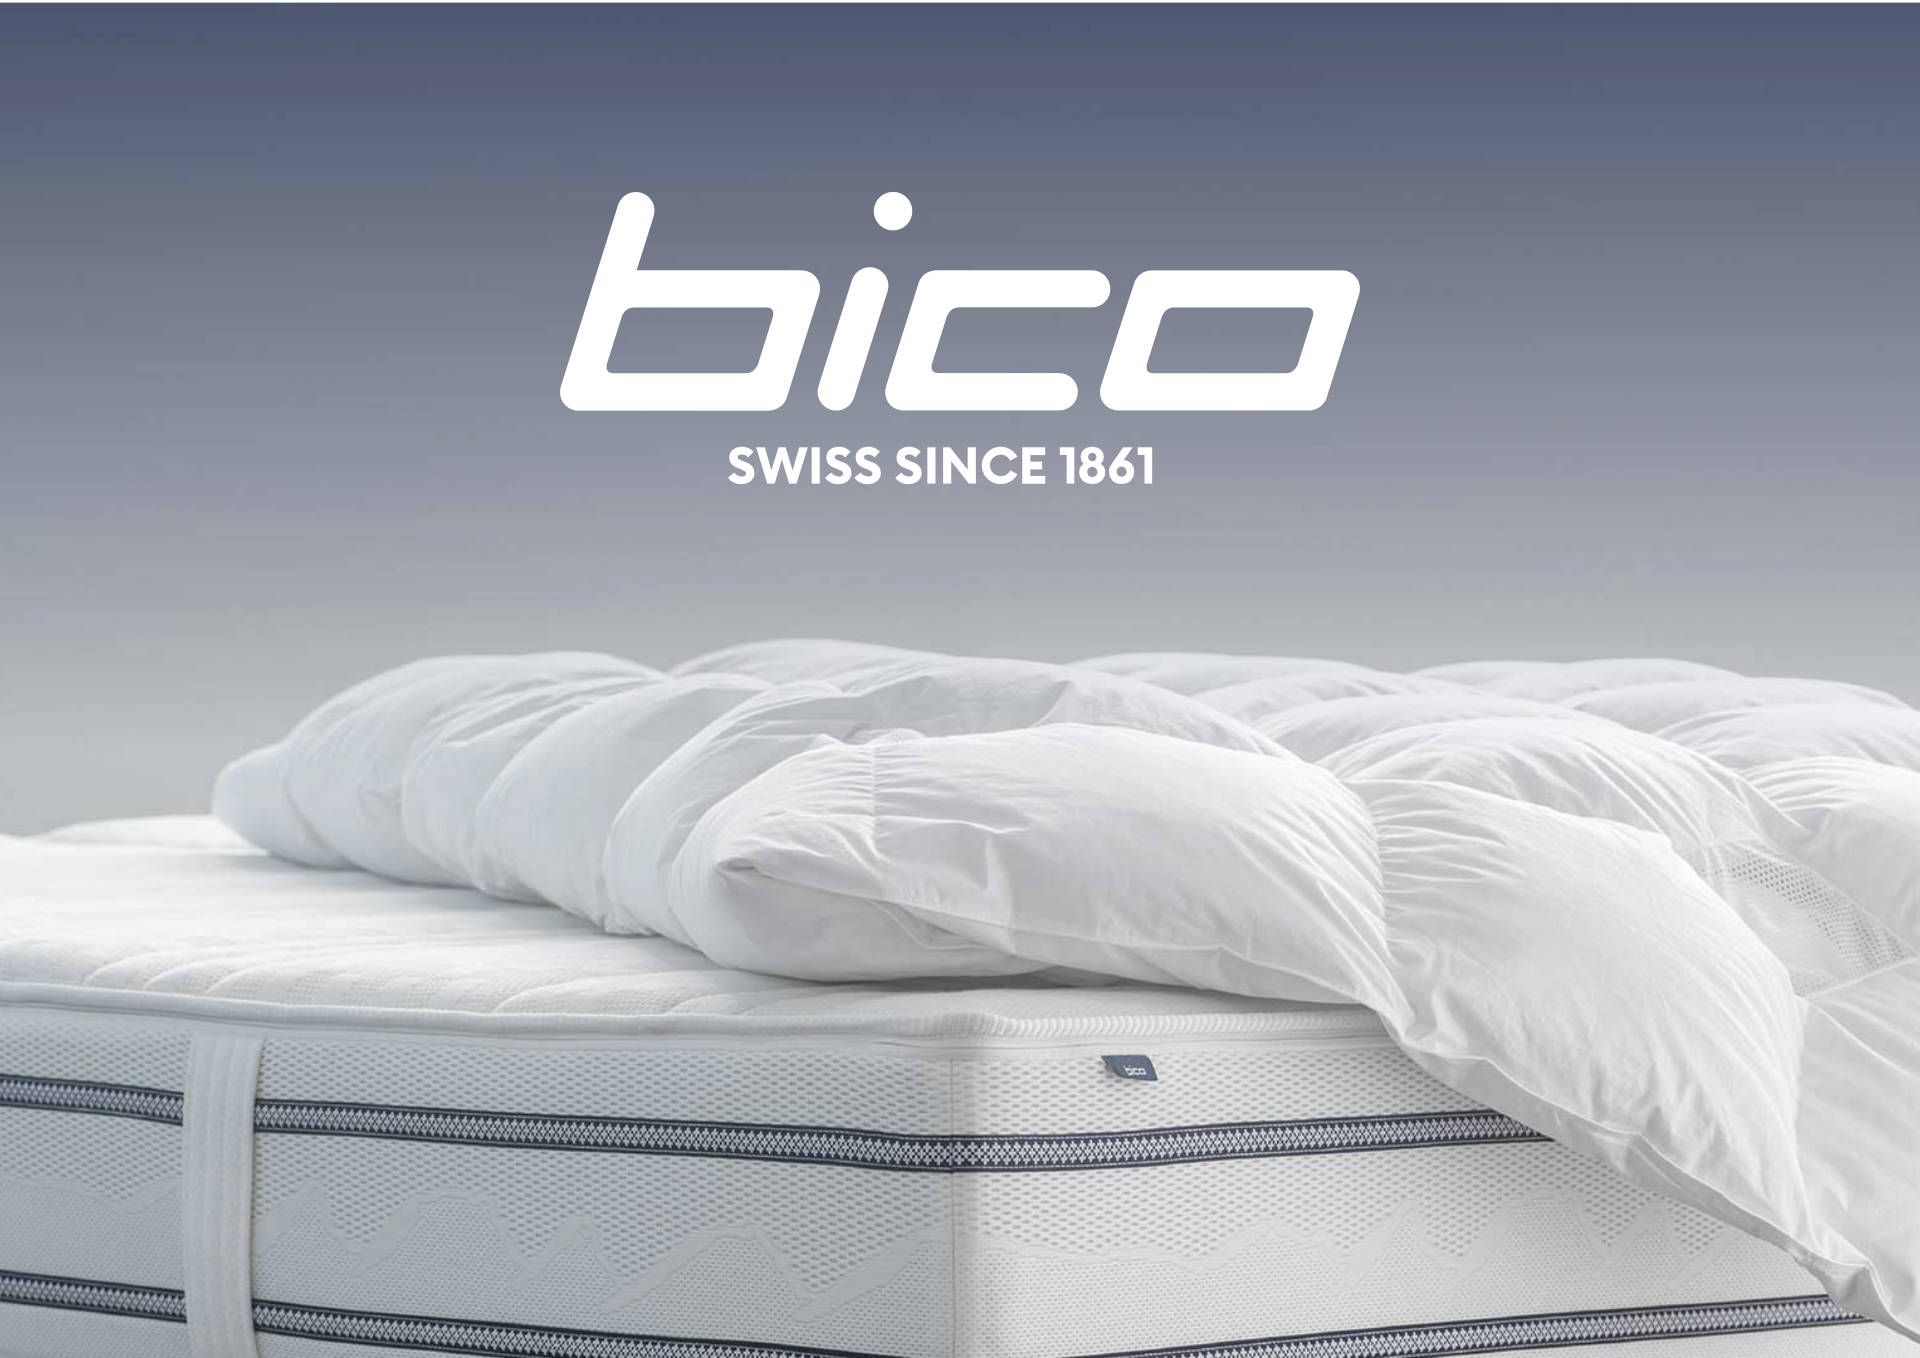 offre-bico-clima-05f60666 Actualités Confort-Lit Yverdon, Lausanne, Givisiez | Vaud et Fribourg